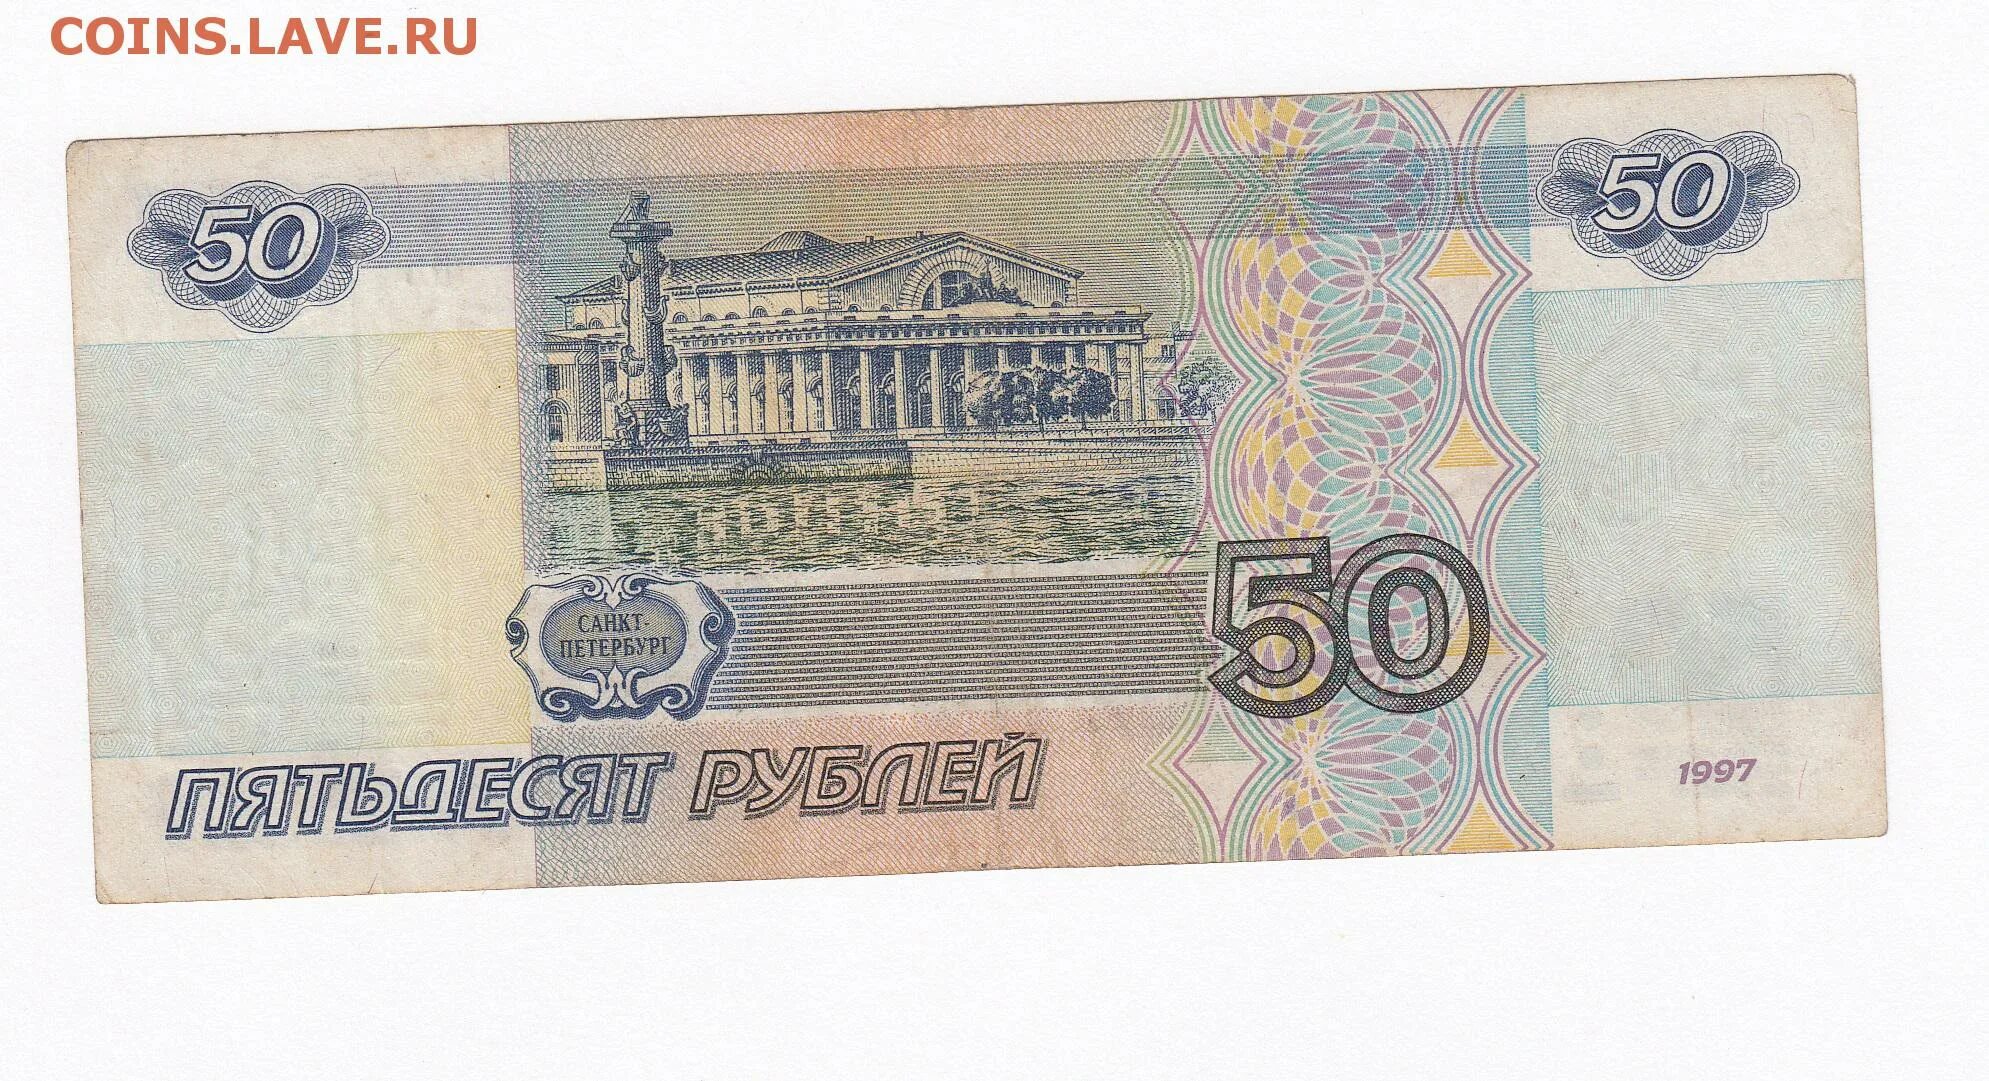 Нужны 50 000. 50 Рублей. 50 Рублей бумажные. Деньги 50 рублей. Банкнота 50 рублей.